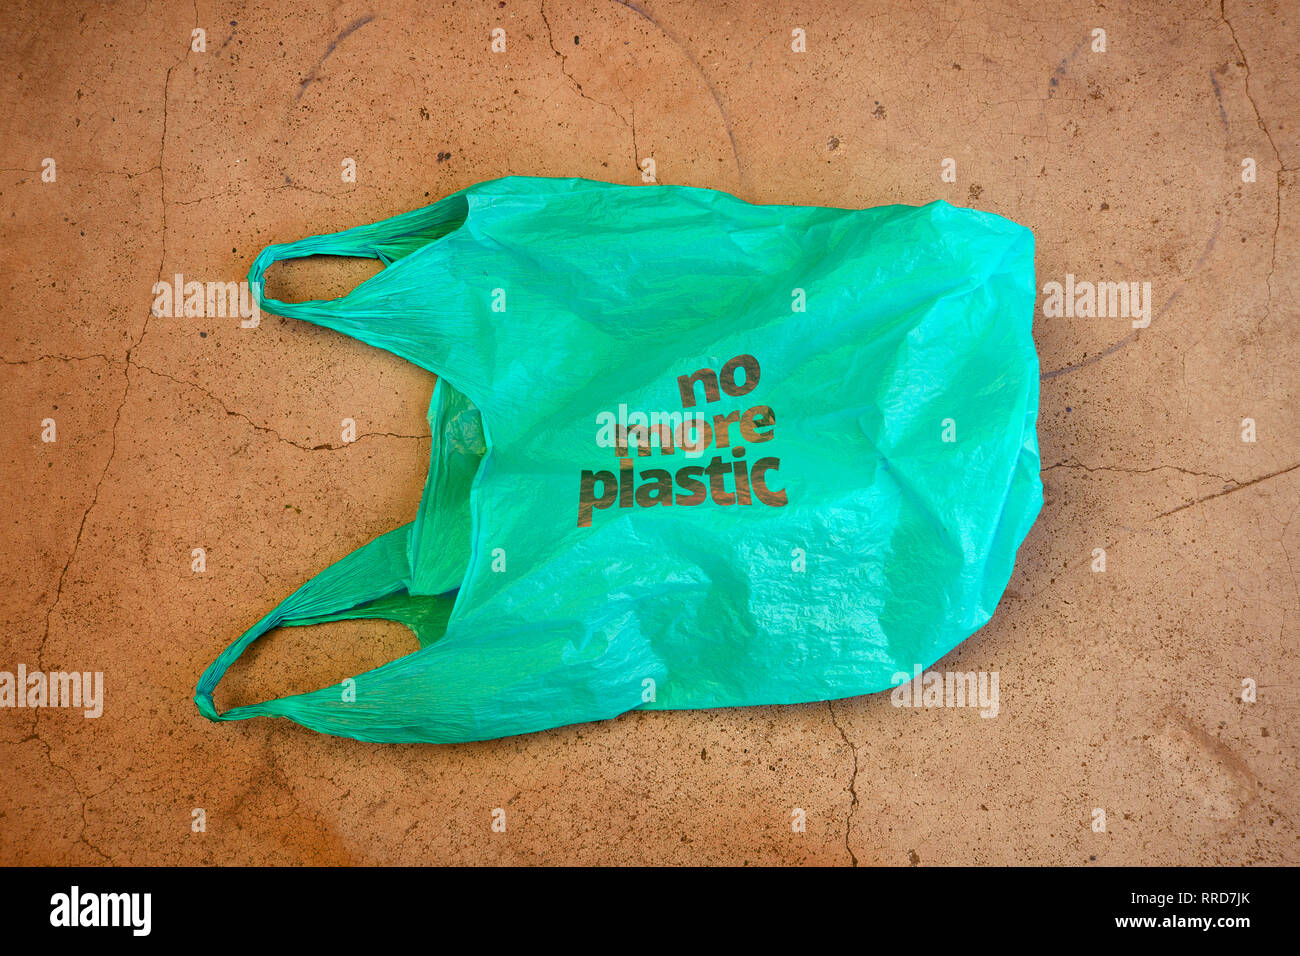 Kein Kunststoff. Umweltbewusstsein care Rechtfertigung erschossen. Es zeigt eine grüne Plastiktüte mit Motto nicht mehr aus Kunststoff. Stockfoto